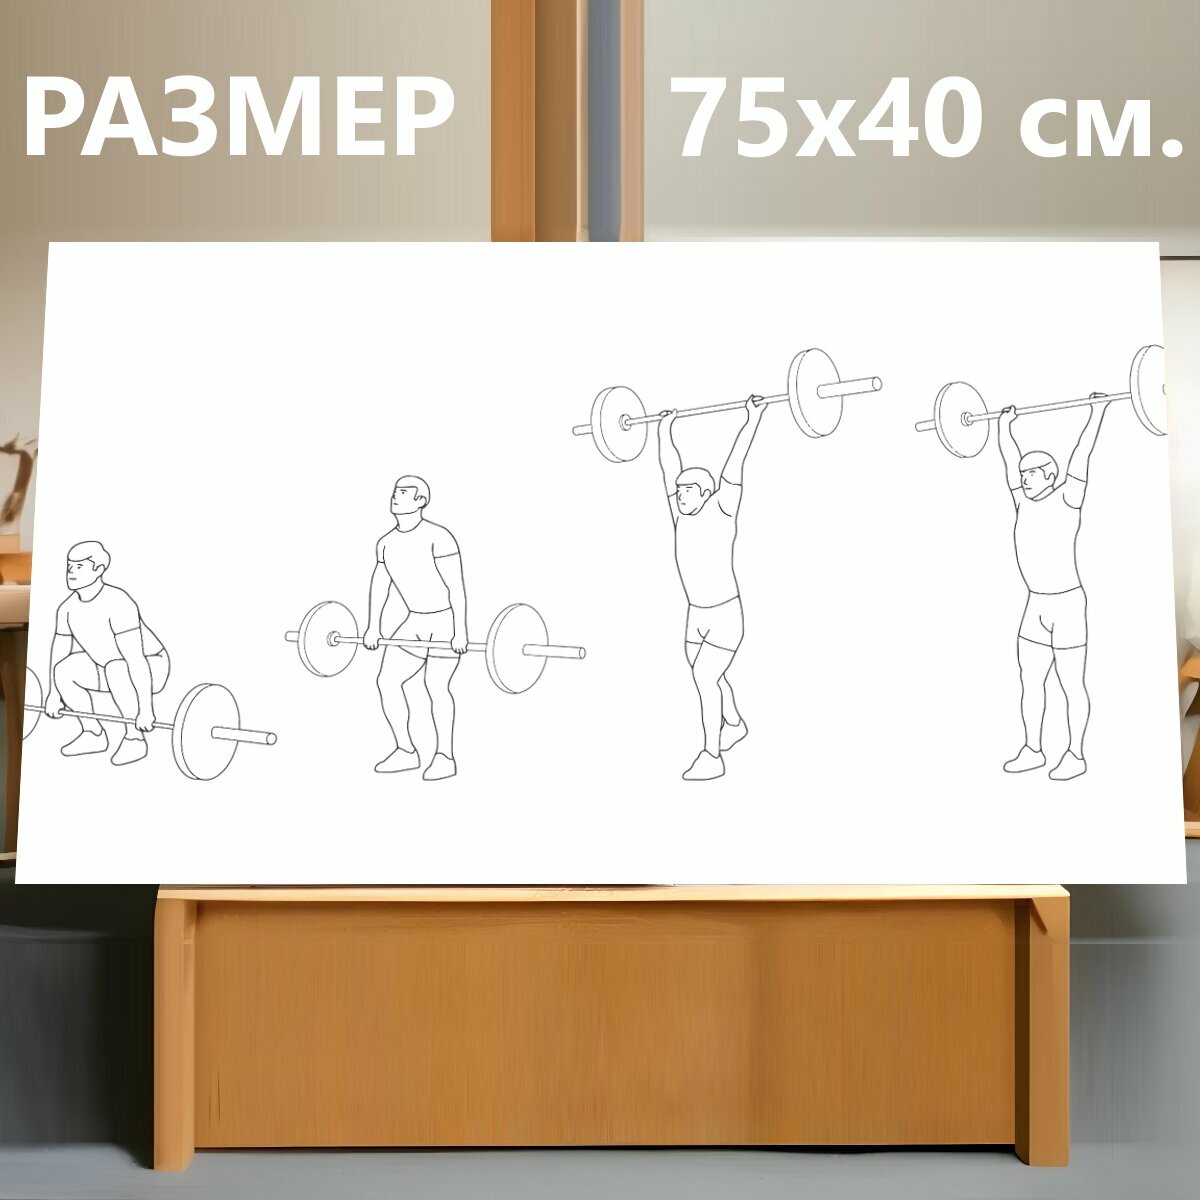 Картина на холсте "Тяжелая атлетика, спорт, мышцы" на подрамнике 75х40 см. для интерьера